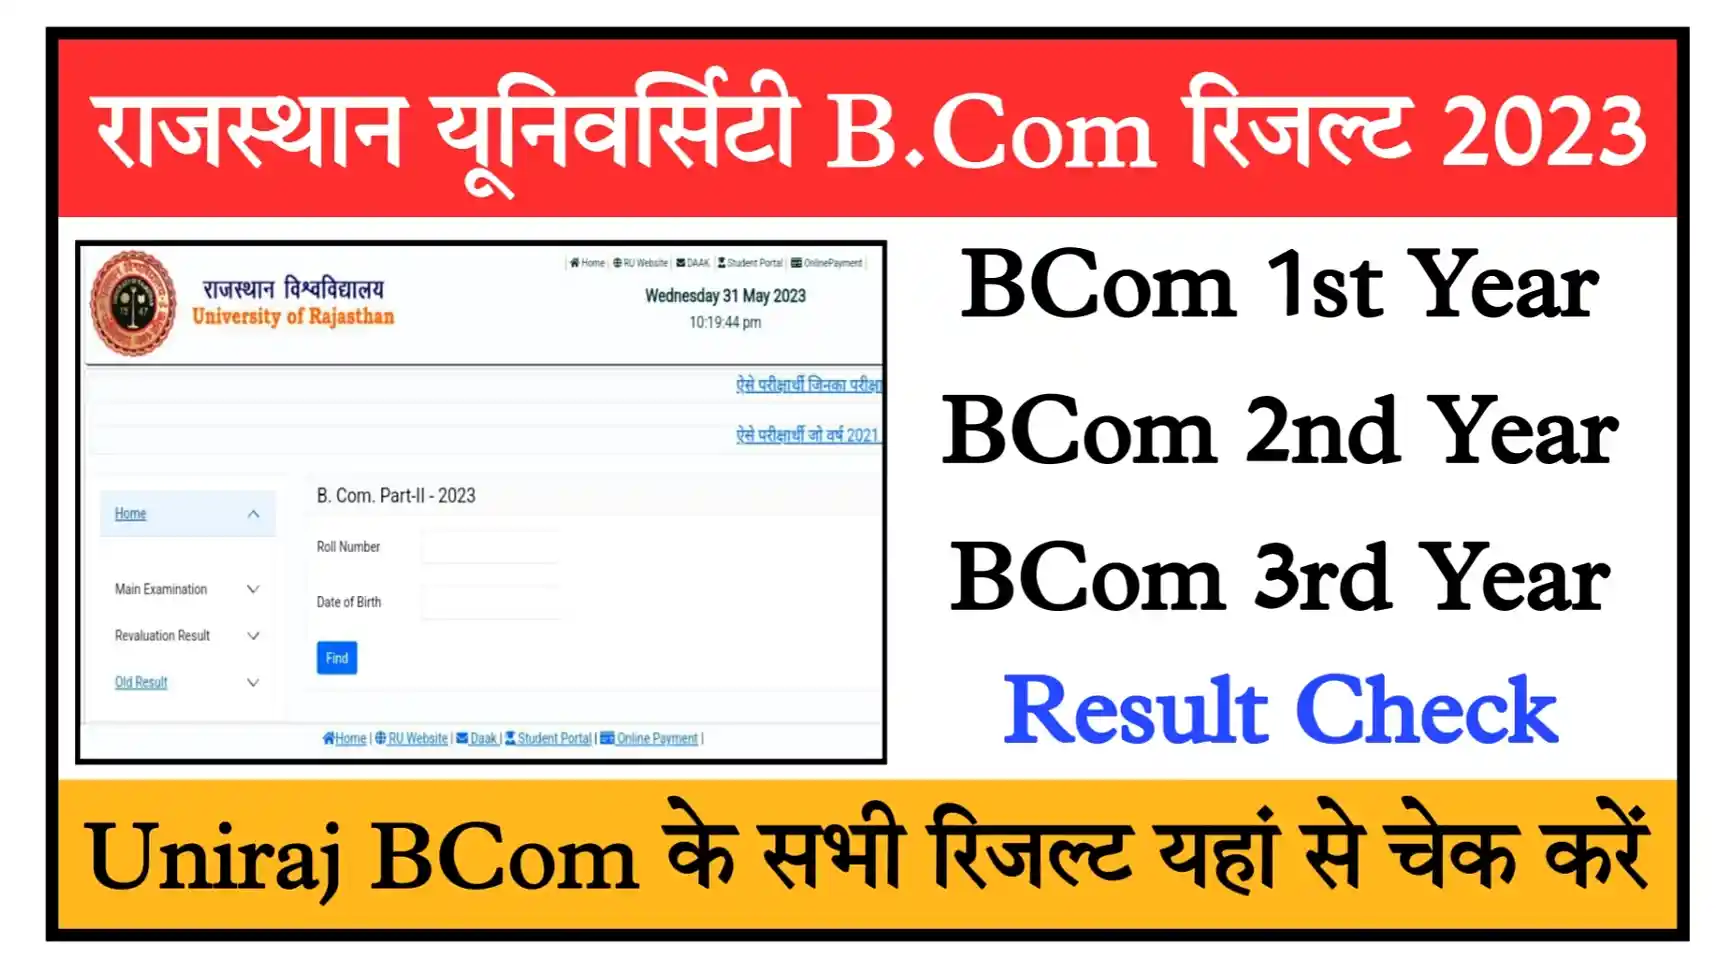 Rajasthan University BCom Result 2023 Check Link Uniraj BCom 1st Year, 2nd Year, 3rd Year Result Direct Link